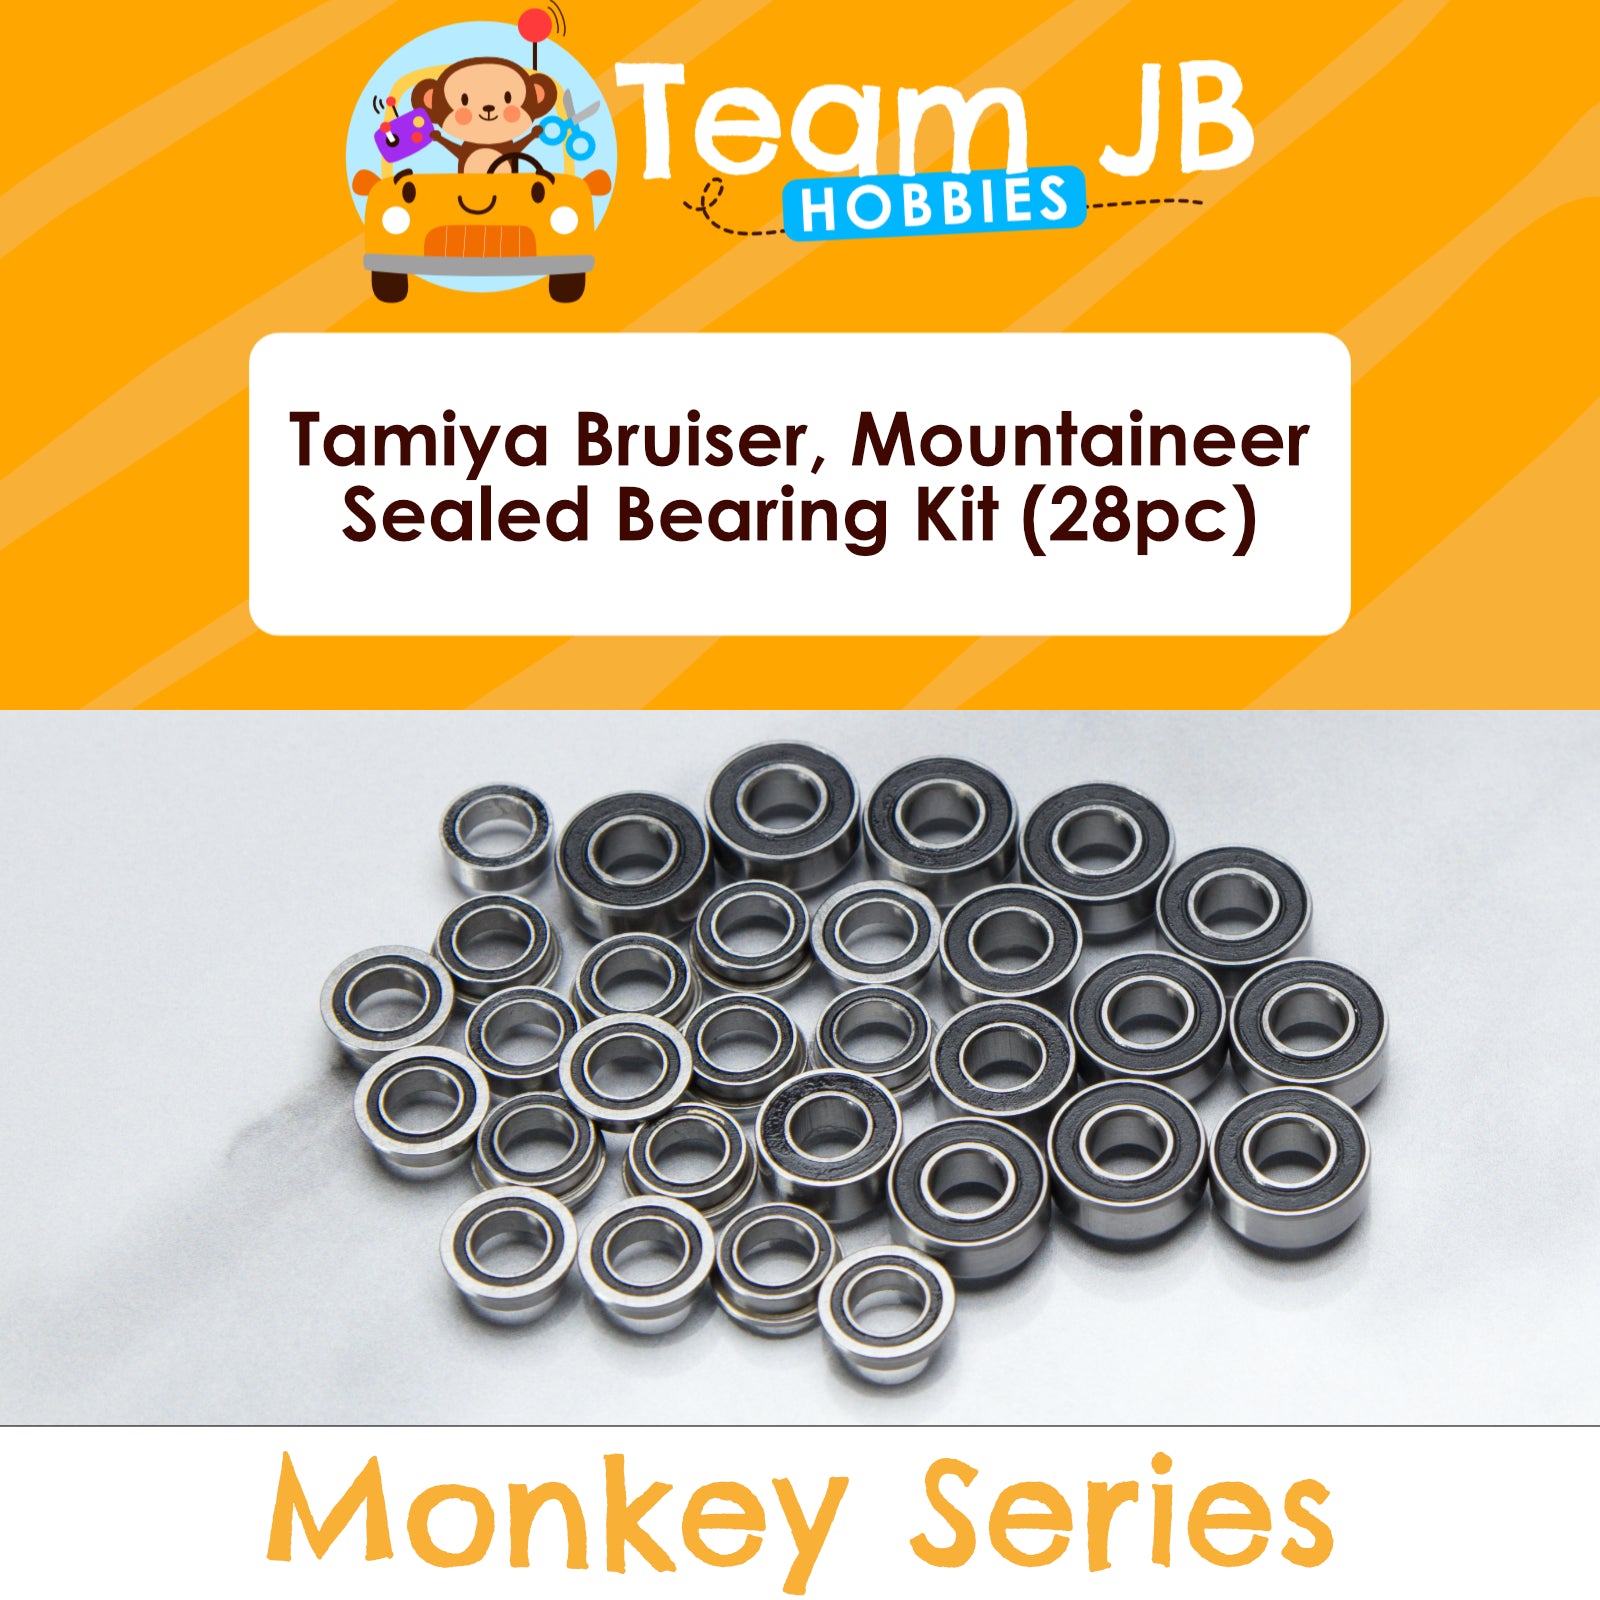 Tamiya Bruiser, Mountaineer - Sealed Bearing Kit